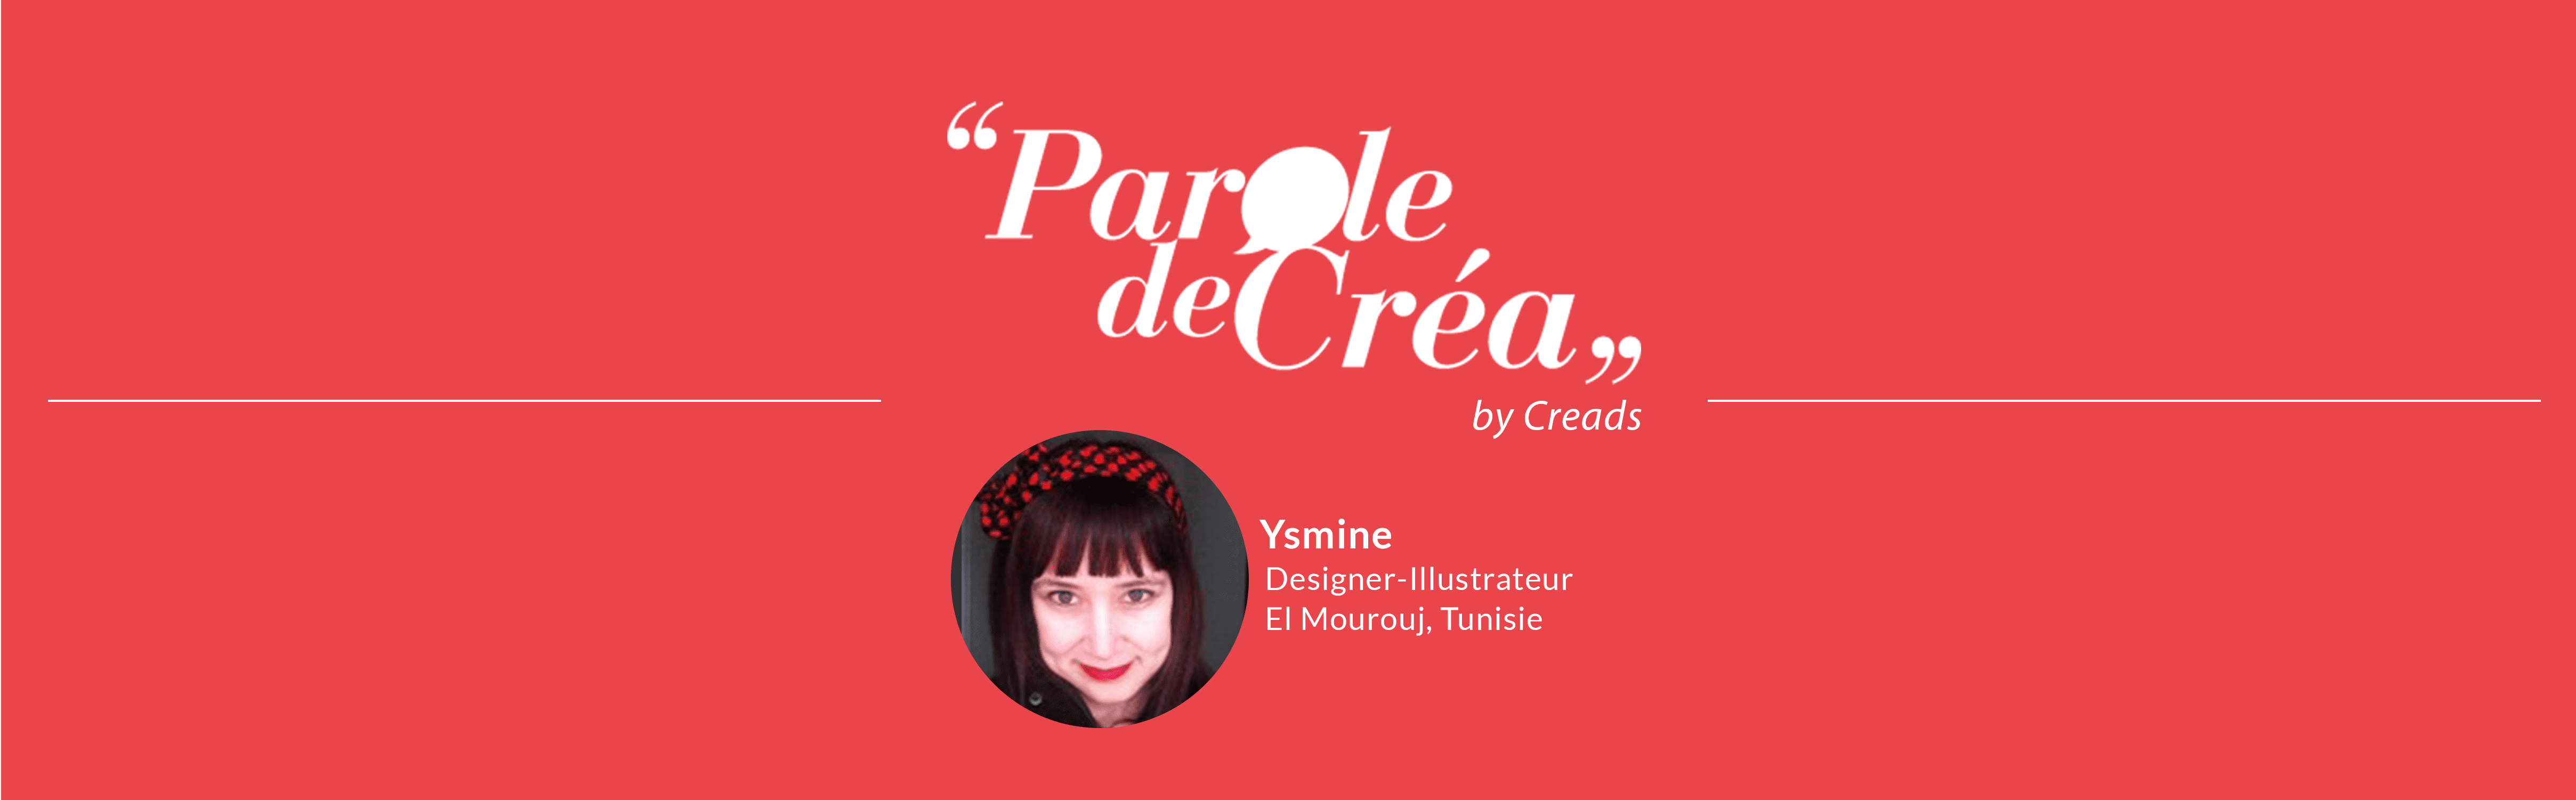 Paroles de créa - Découvrez l&#039;interview de Ysmine